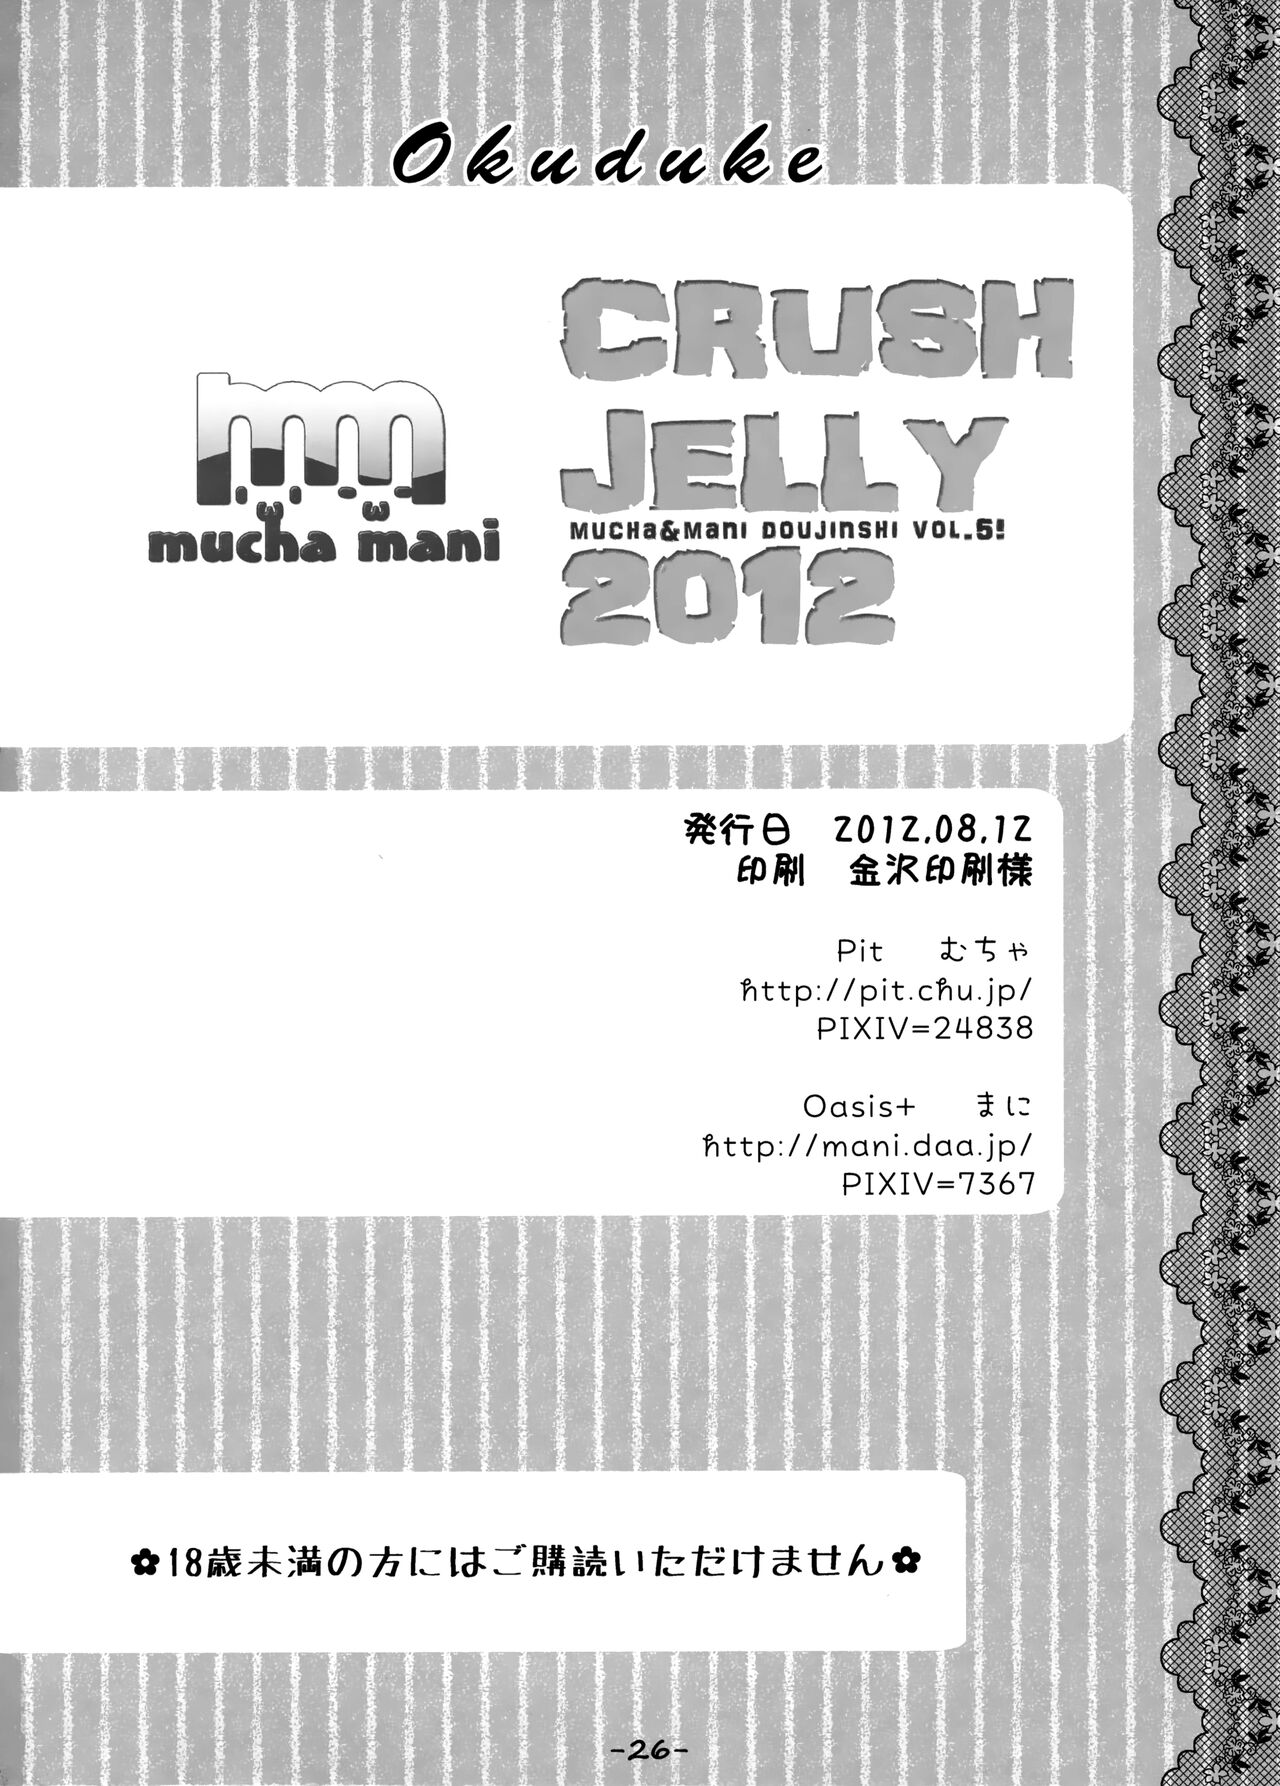 (C82) [Pit、Oasis+ (ぴよ寺むちゃ、うさ城まに)] CRUSH JELLY 2012